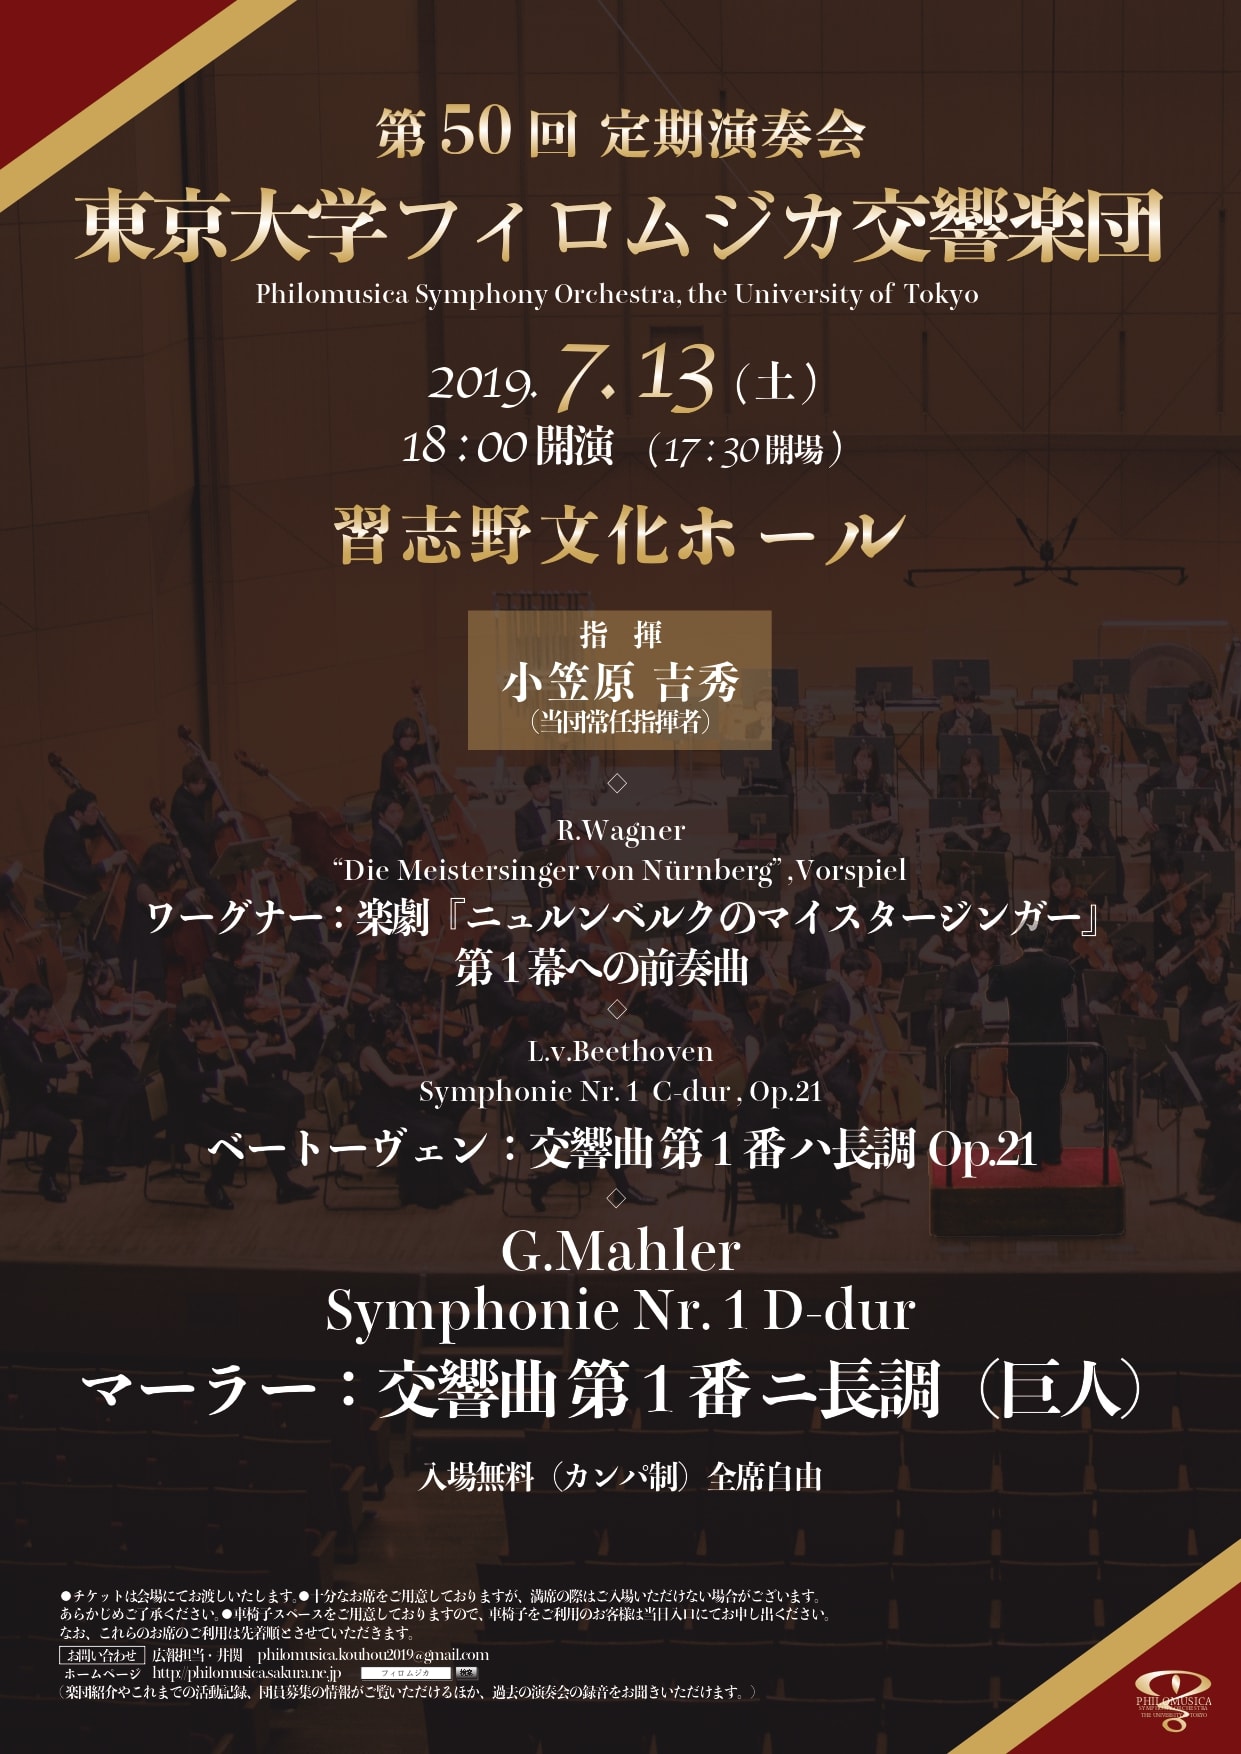 東京大学フィロムジカ交響楽団